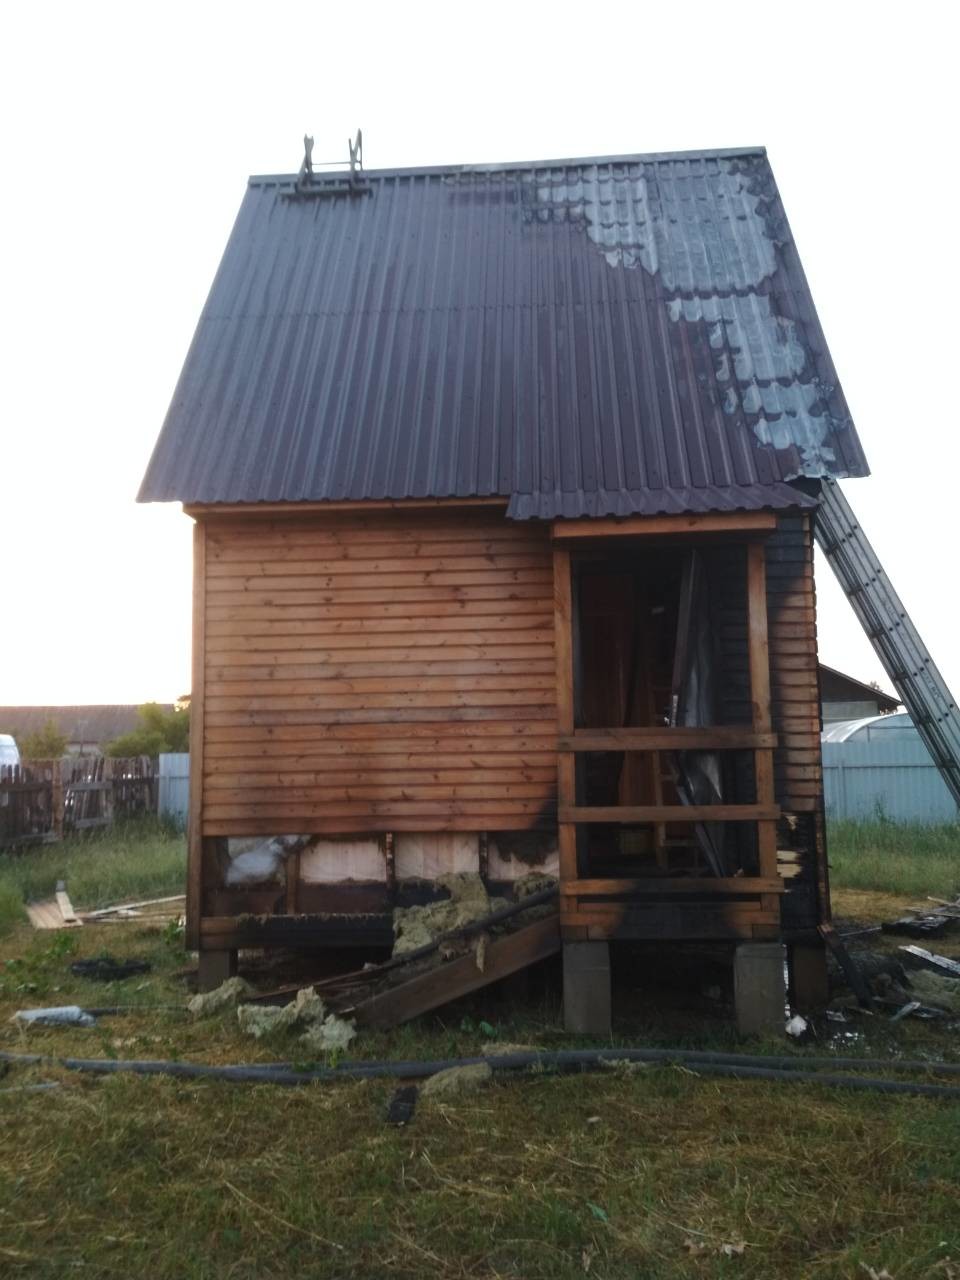 Ранним утром 20 июня 2019 года спасателям, на номер 112, поступило сообщение о загорании жилого дома по ул. Затишанской в д. Слободка Бобруйского района.